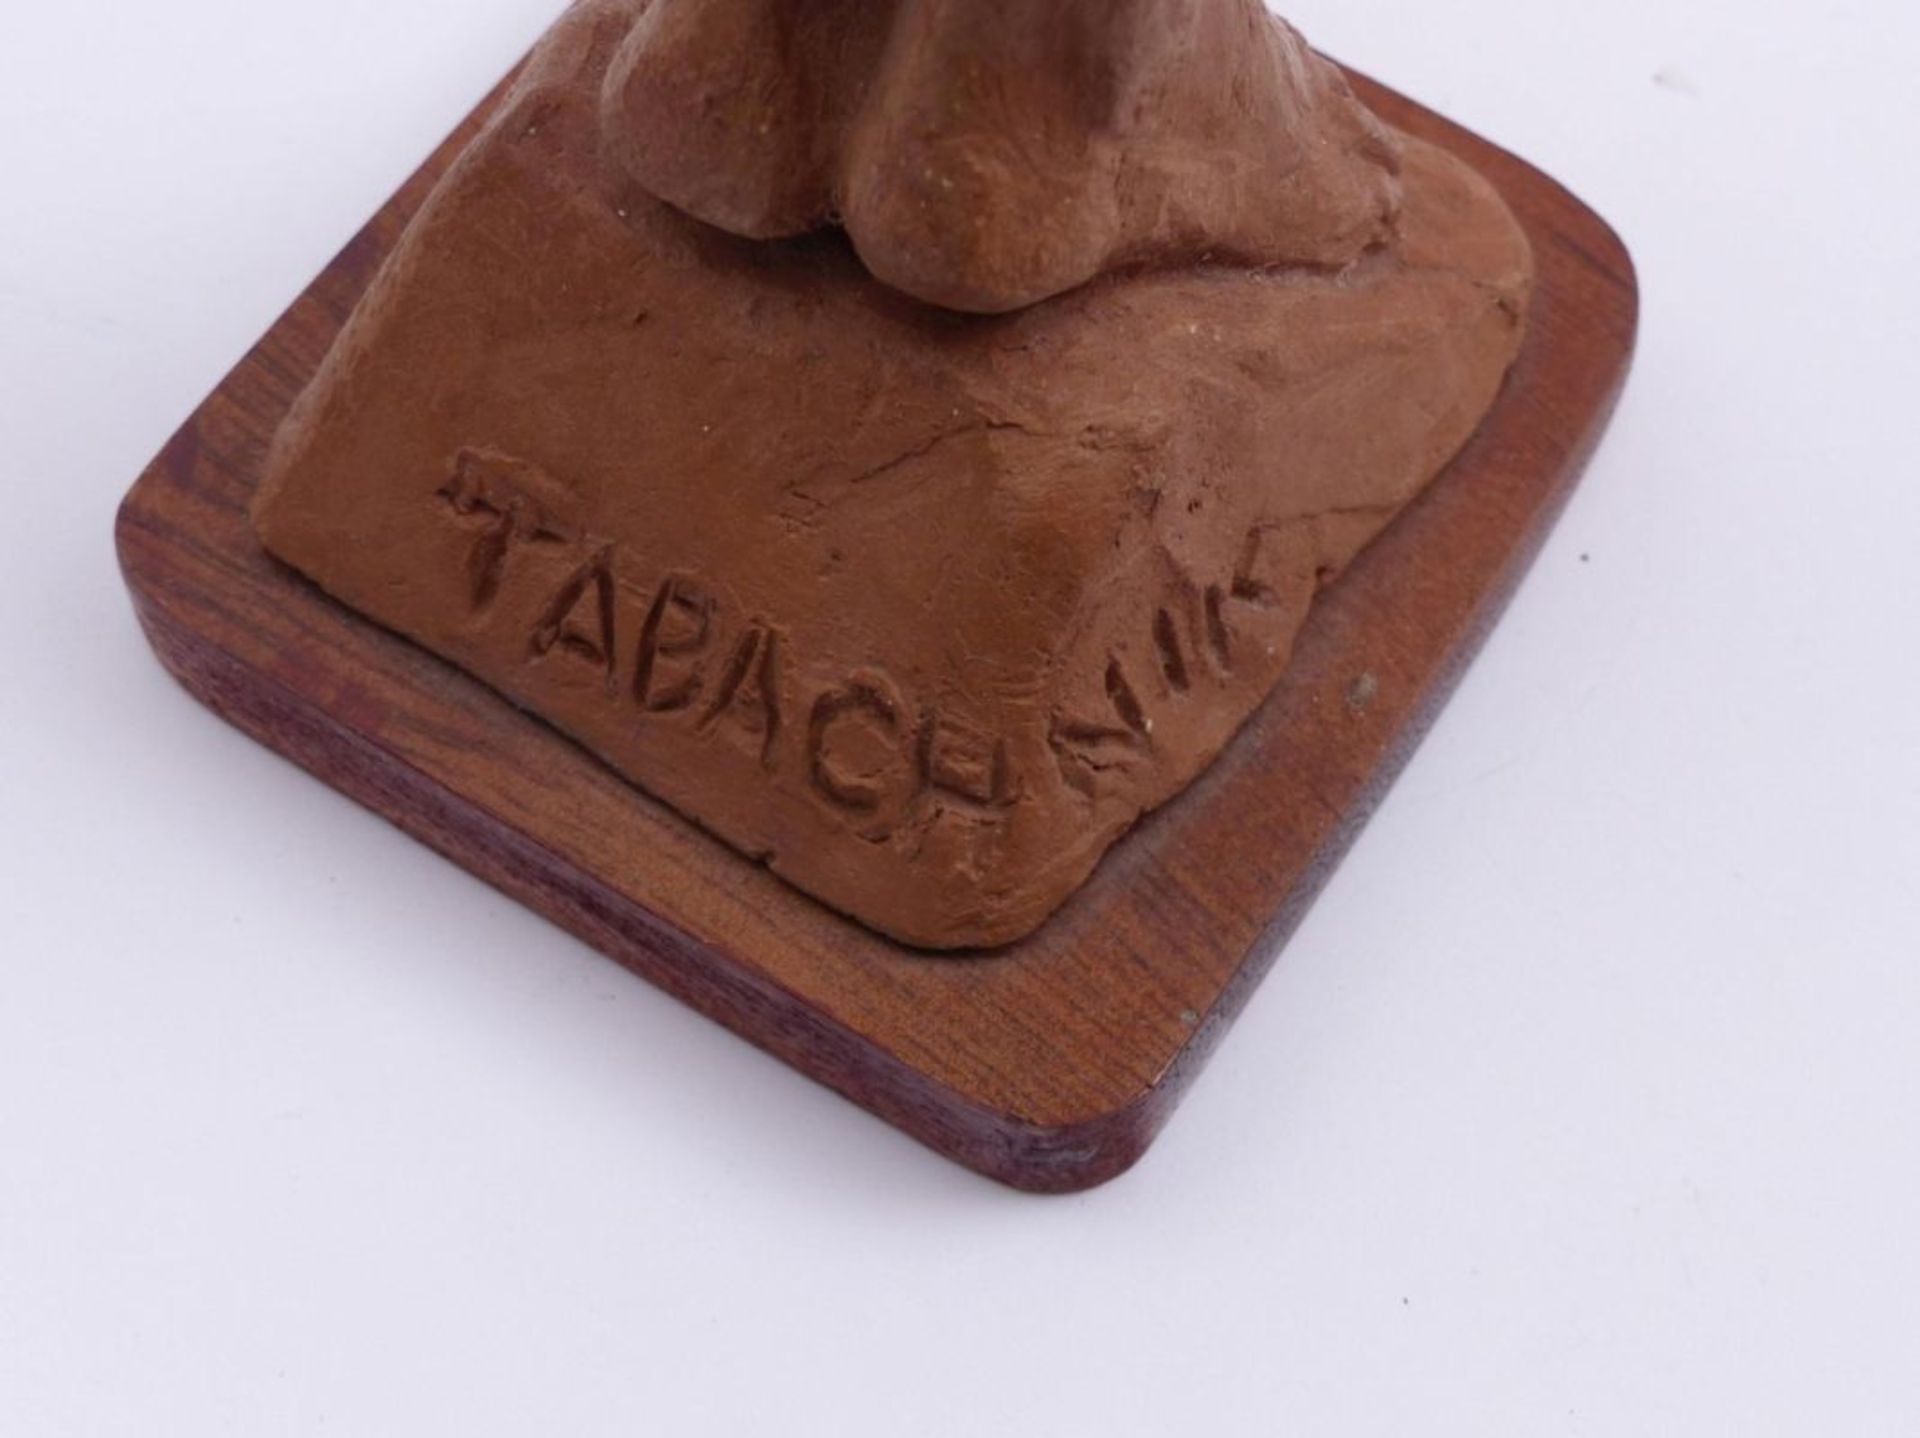 Tabachnyk, Josef - Image 5 of 5